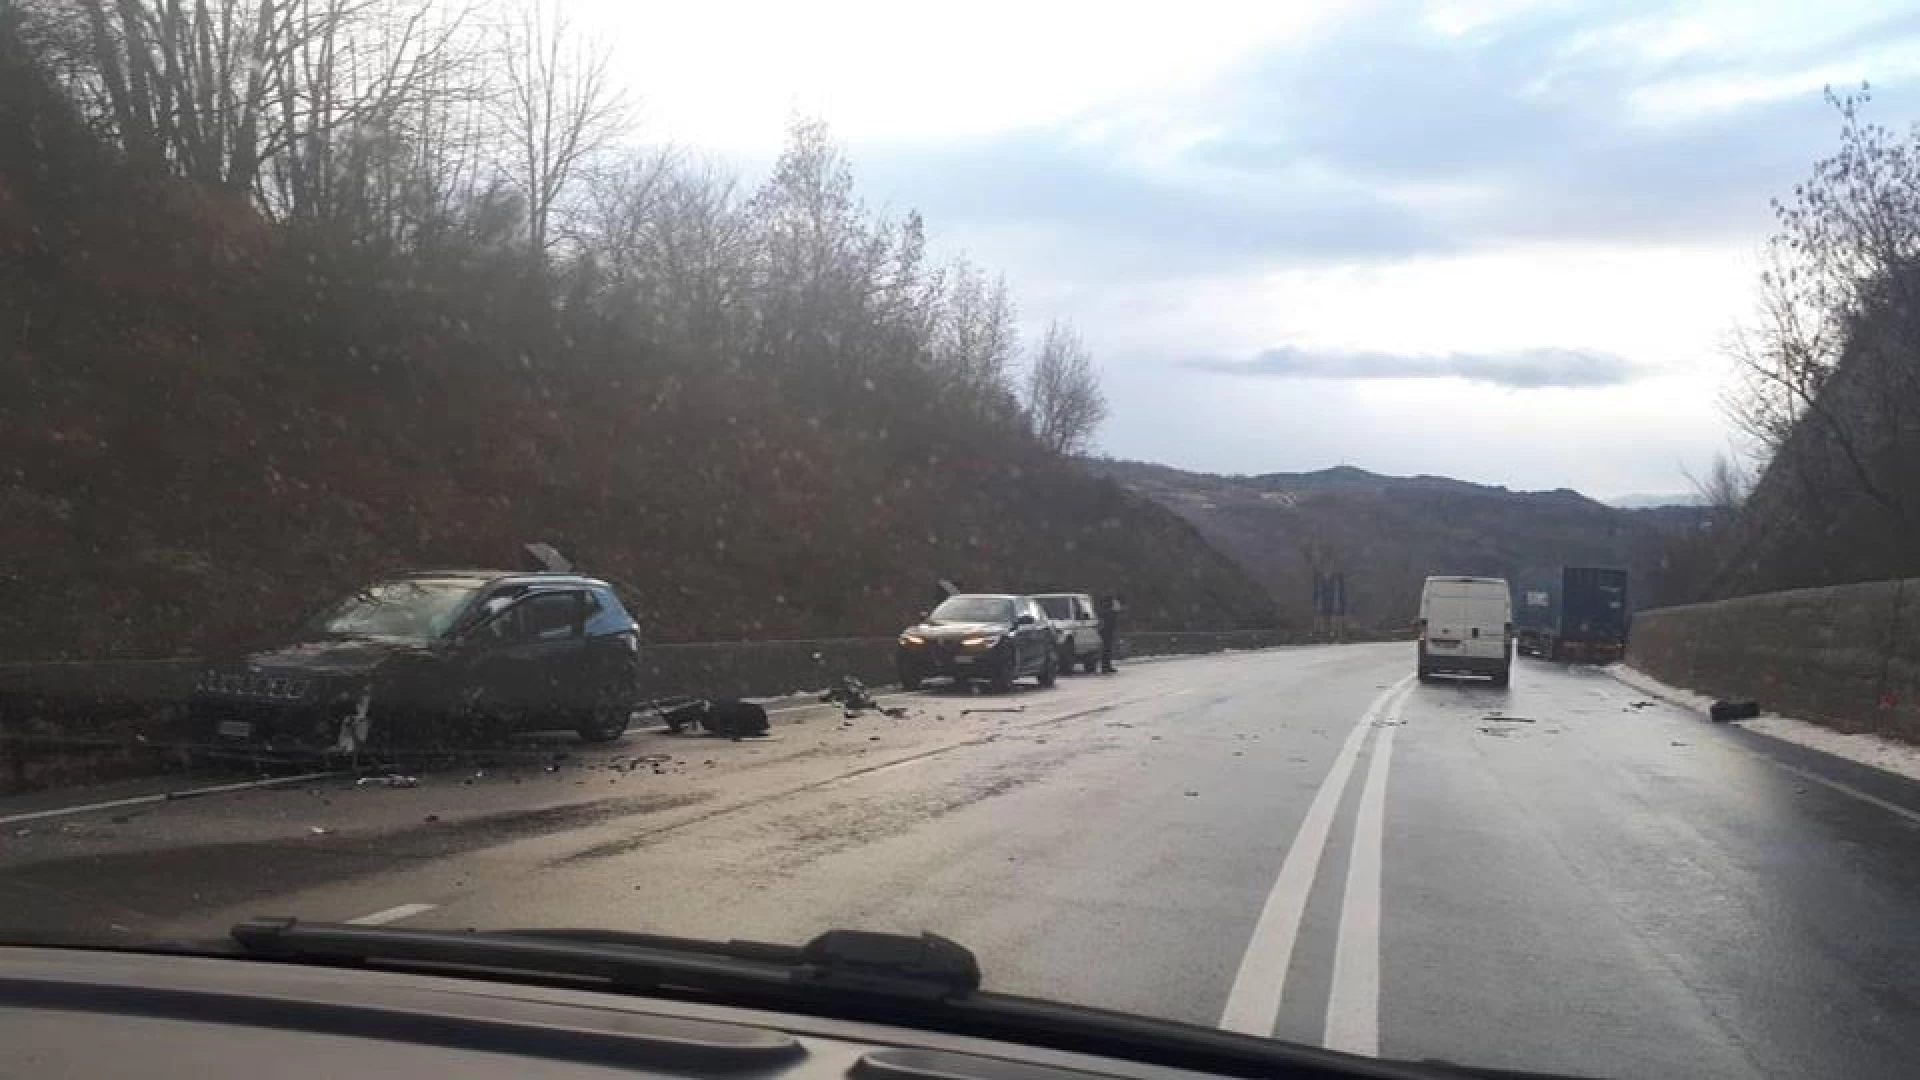 Colli a Volturno: due incidenti sulla statale 158 di prima mattina a causa del gelo. Un tir esce fuori strada. Un ferito